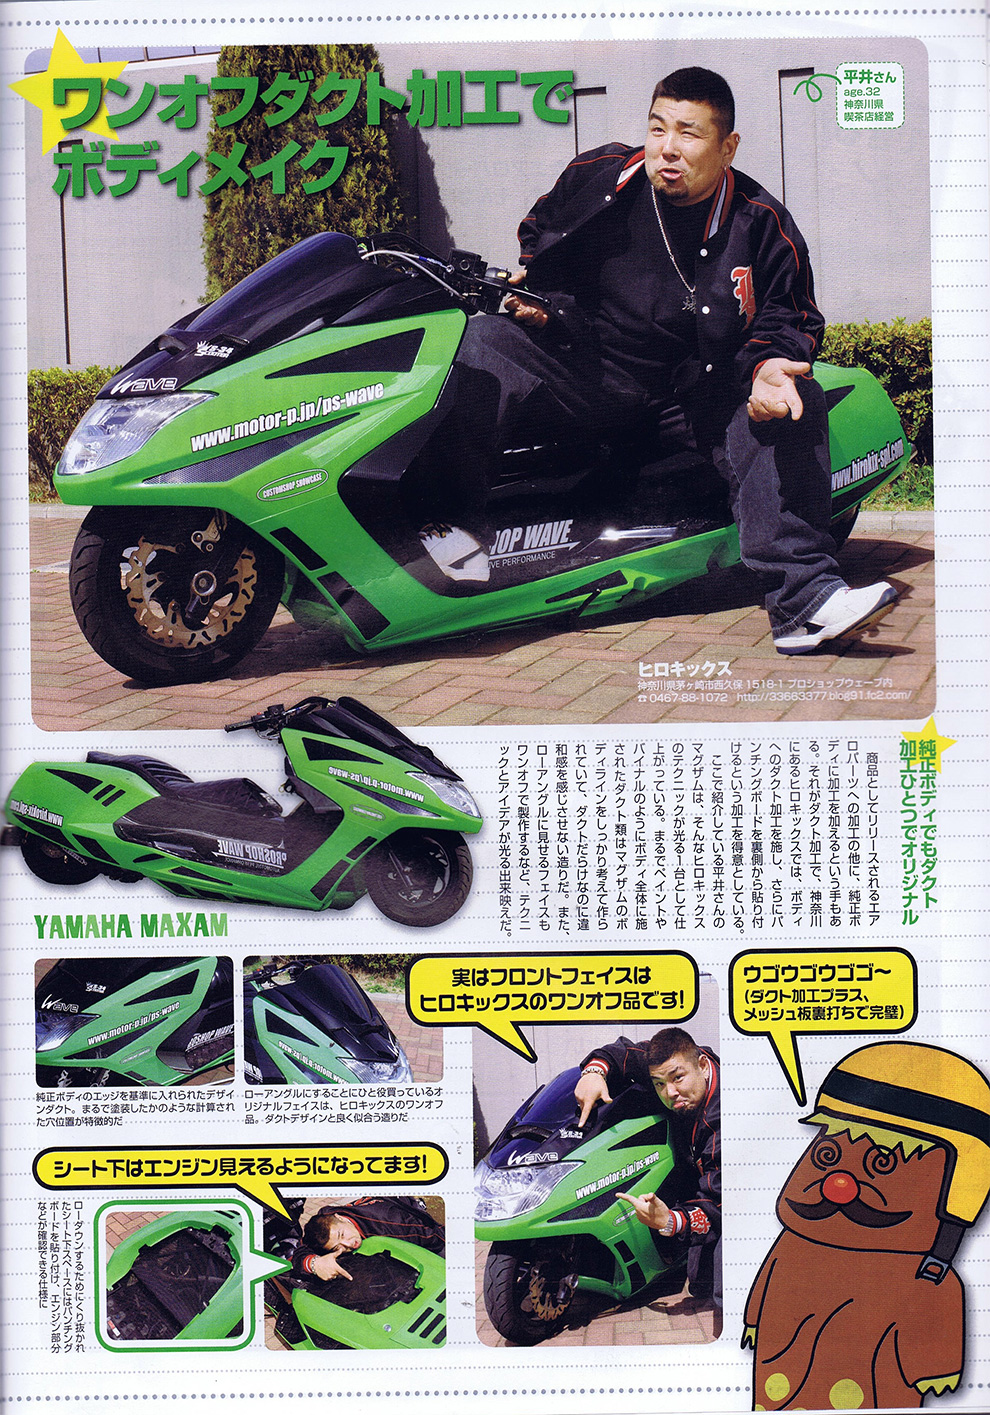 ヒロキックスデザイン掲載雑誌_2008.06_カスタムスクーター